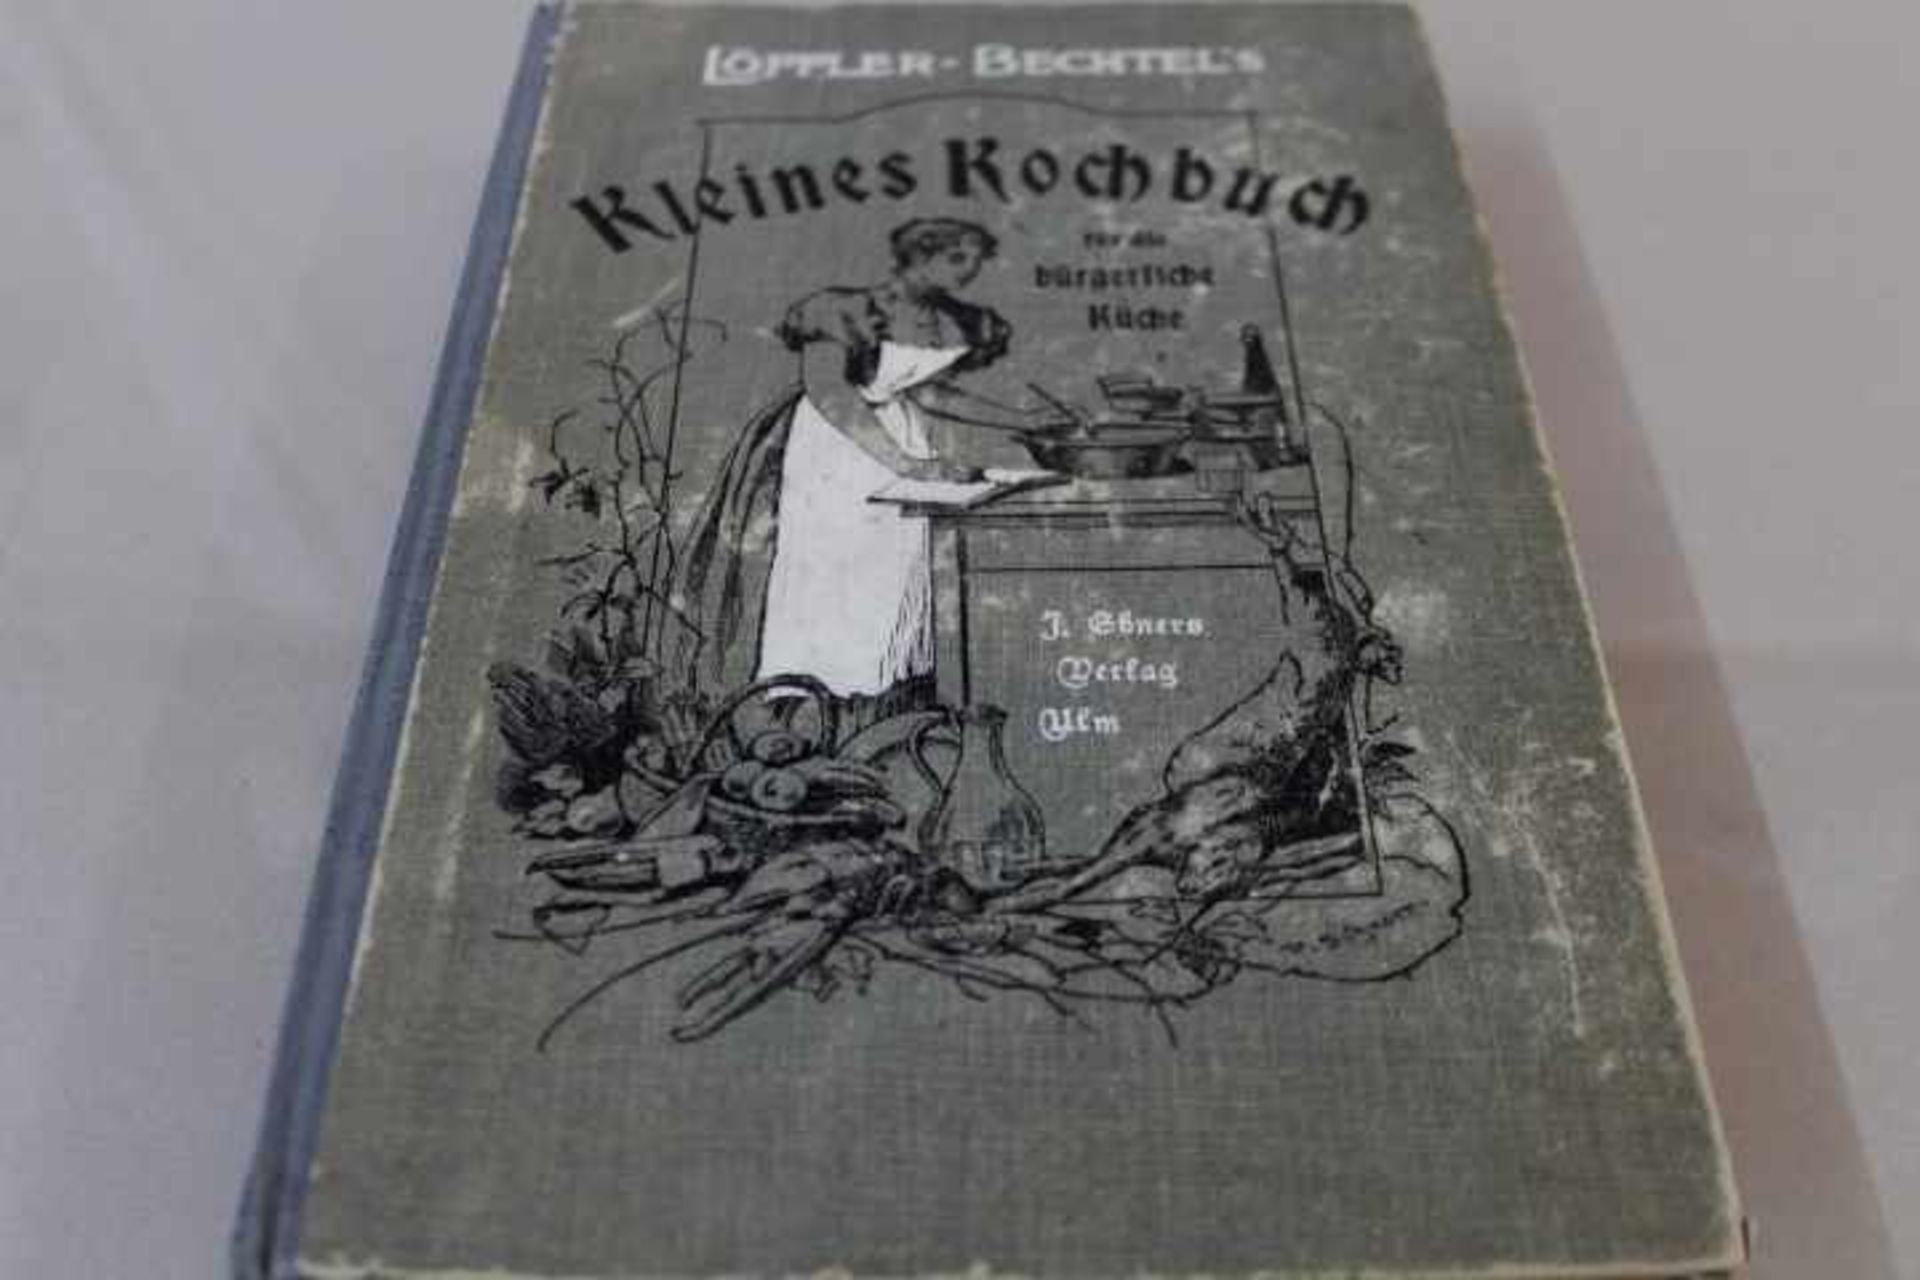 Löffler-BechtelKleines Kochbuch für dieeinfache bürgerliche Kücheum 1905Ulm J.Ebner- - -20.00 %